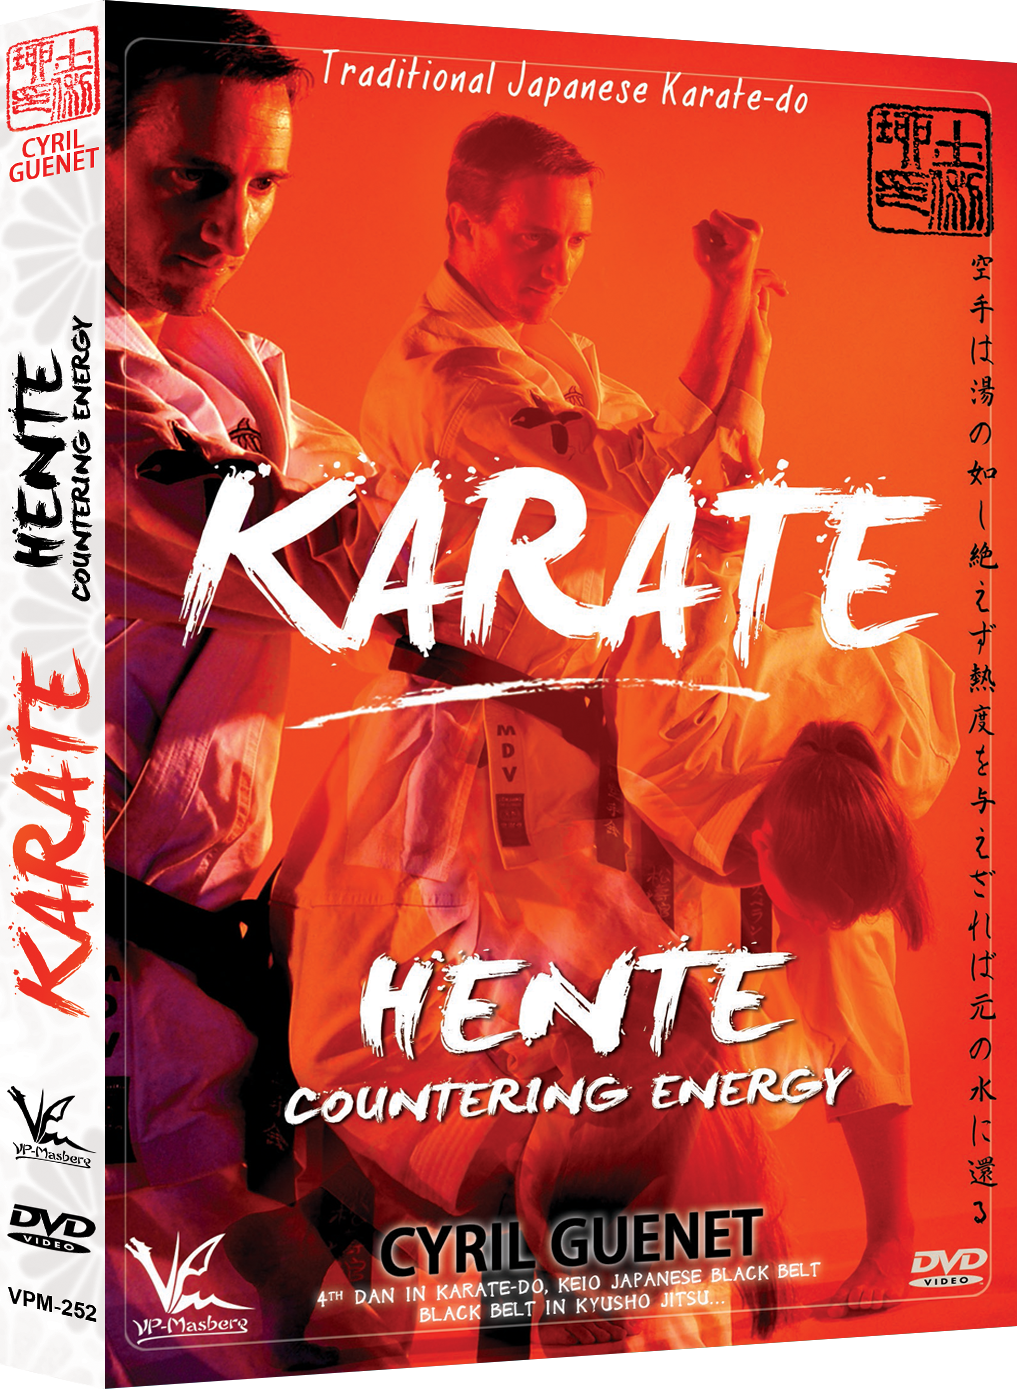 Karate - DVD Hente Countering Energy de Cyril Guenet 